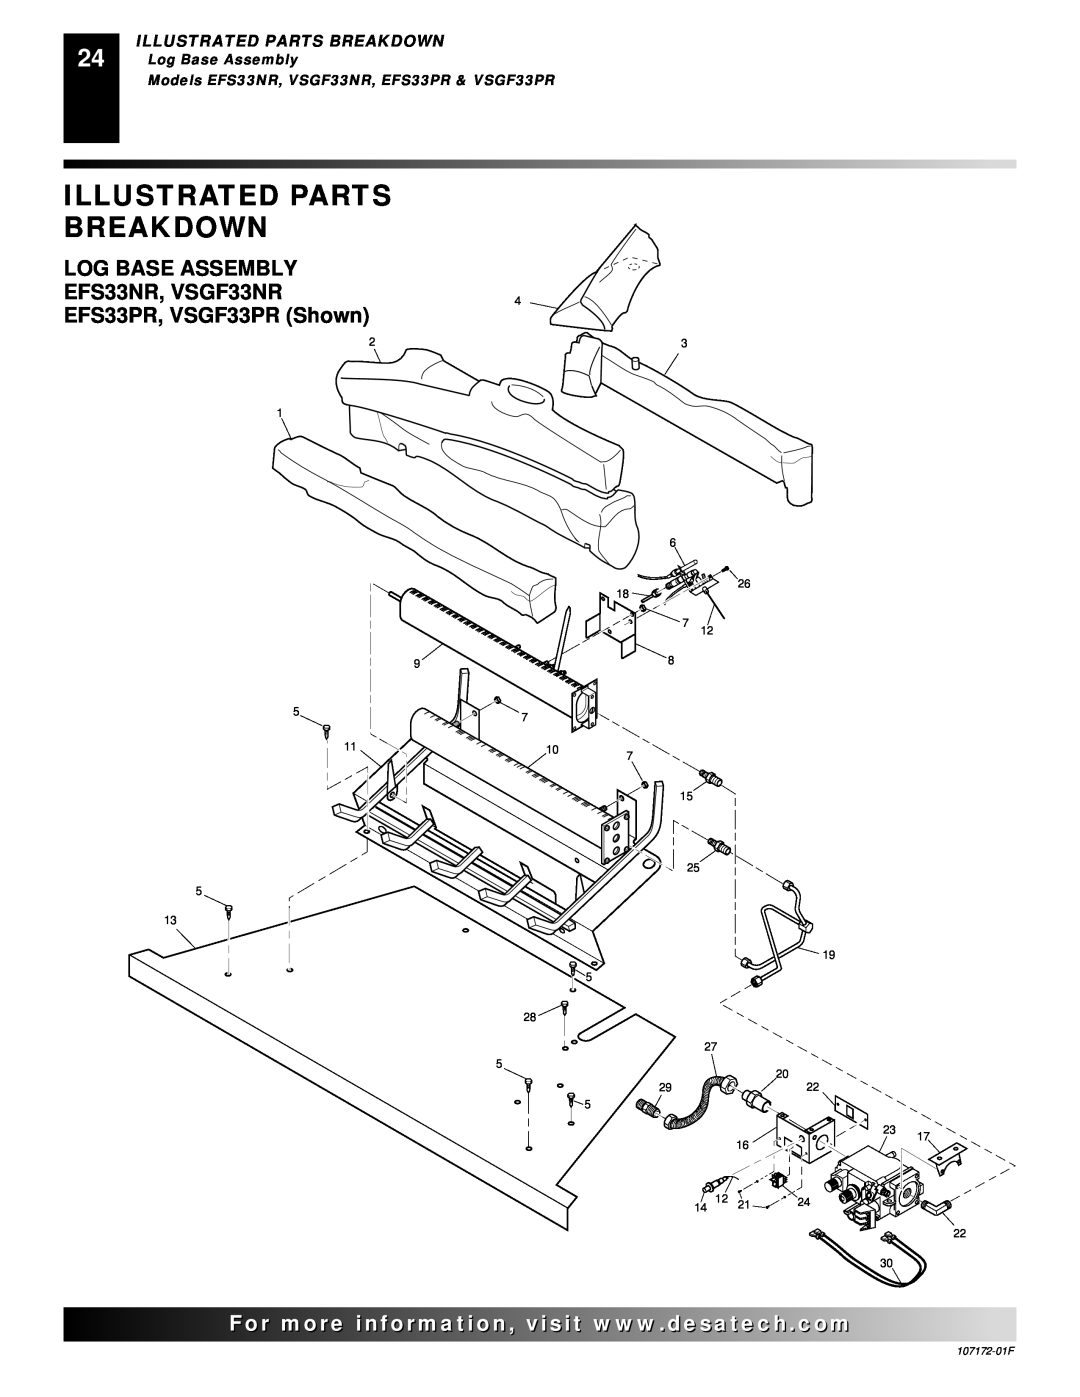 Desa Illustrated Parts Breakdown, LOG BASE ASSEMBLY EFS33NR, VSGF33NR4, EFS33PR, VSGF33PR Shown, Log Base Assembly 